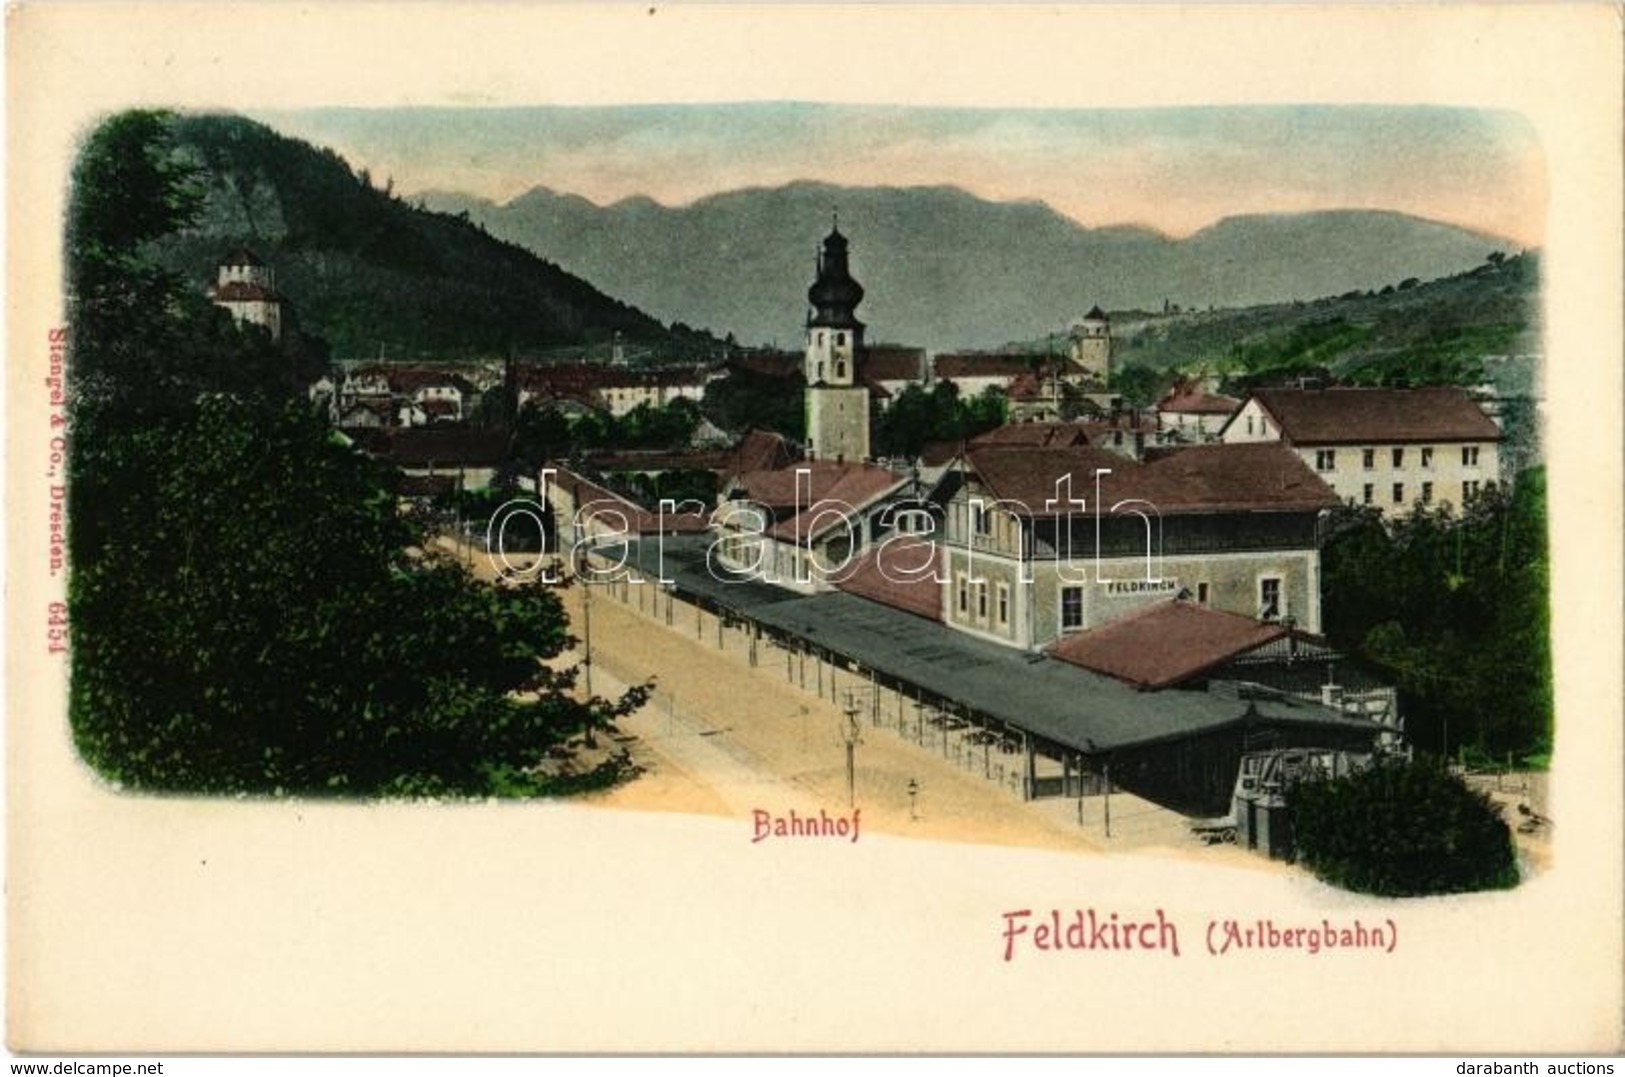 ** T1 Feldkirch (Arlbergbahn), Bahnhof / Railway Station - Unclassified